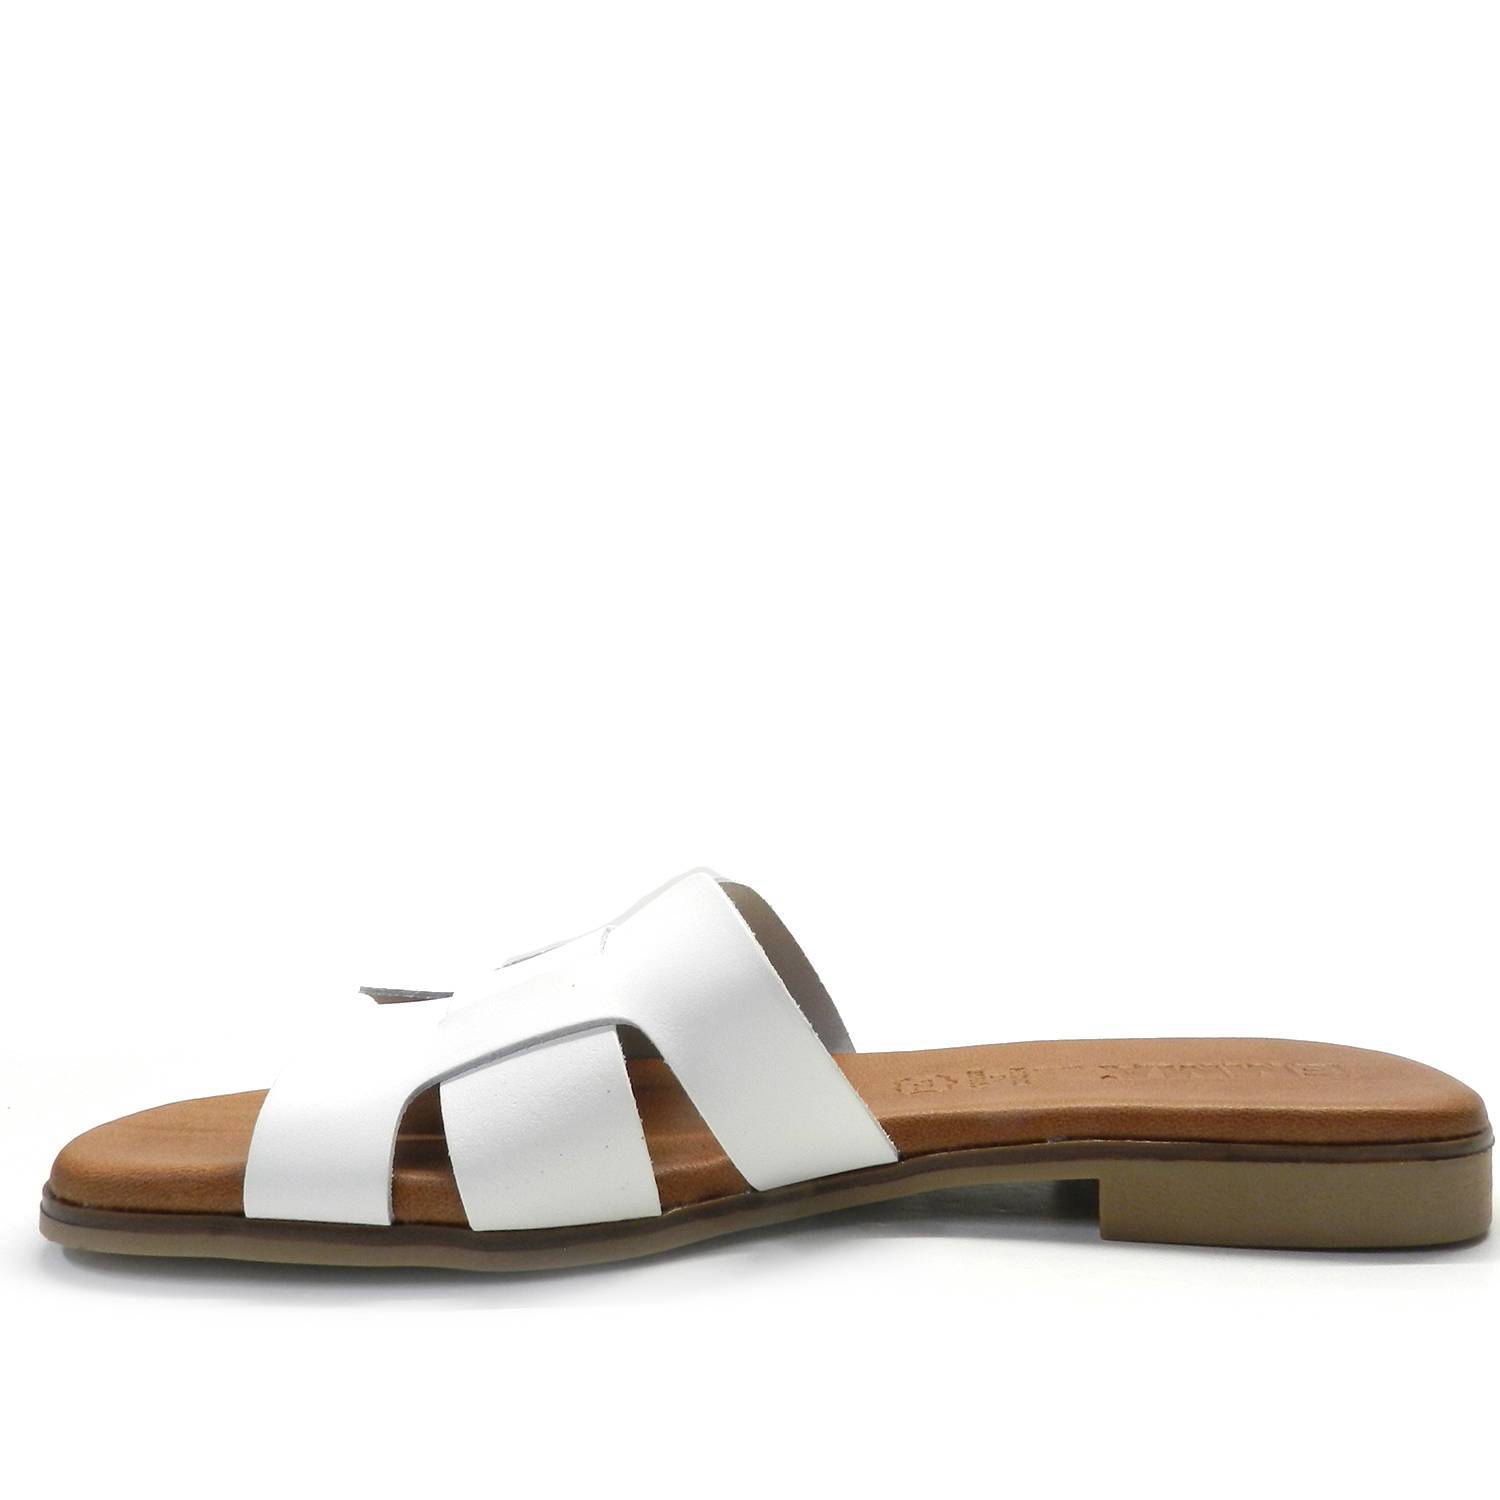 Sandalia de la marca Escala modelo Sacalm en color blanco. Sandalia plana tipo pala de piel lisa. Banda ancha entrelazada y planta acolchada de piel. Muy cómoda y perfecta para cualquier ocasión.